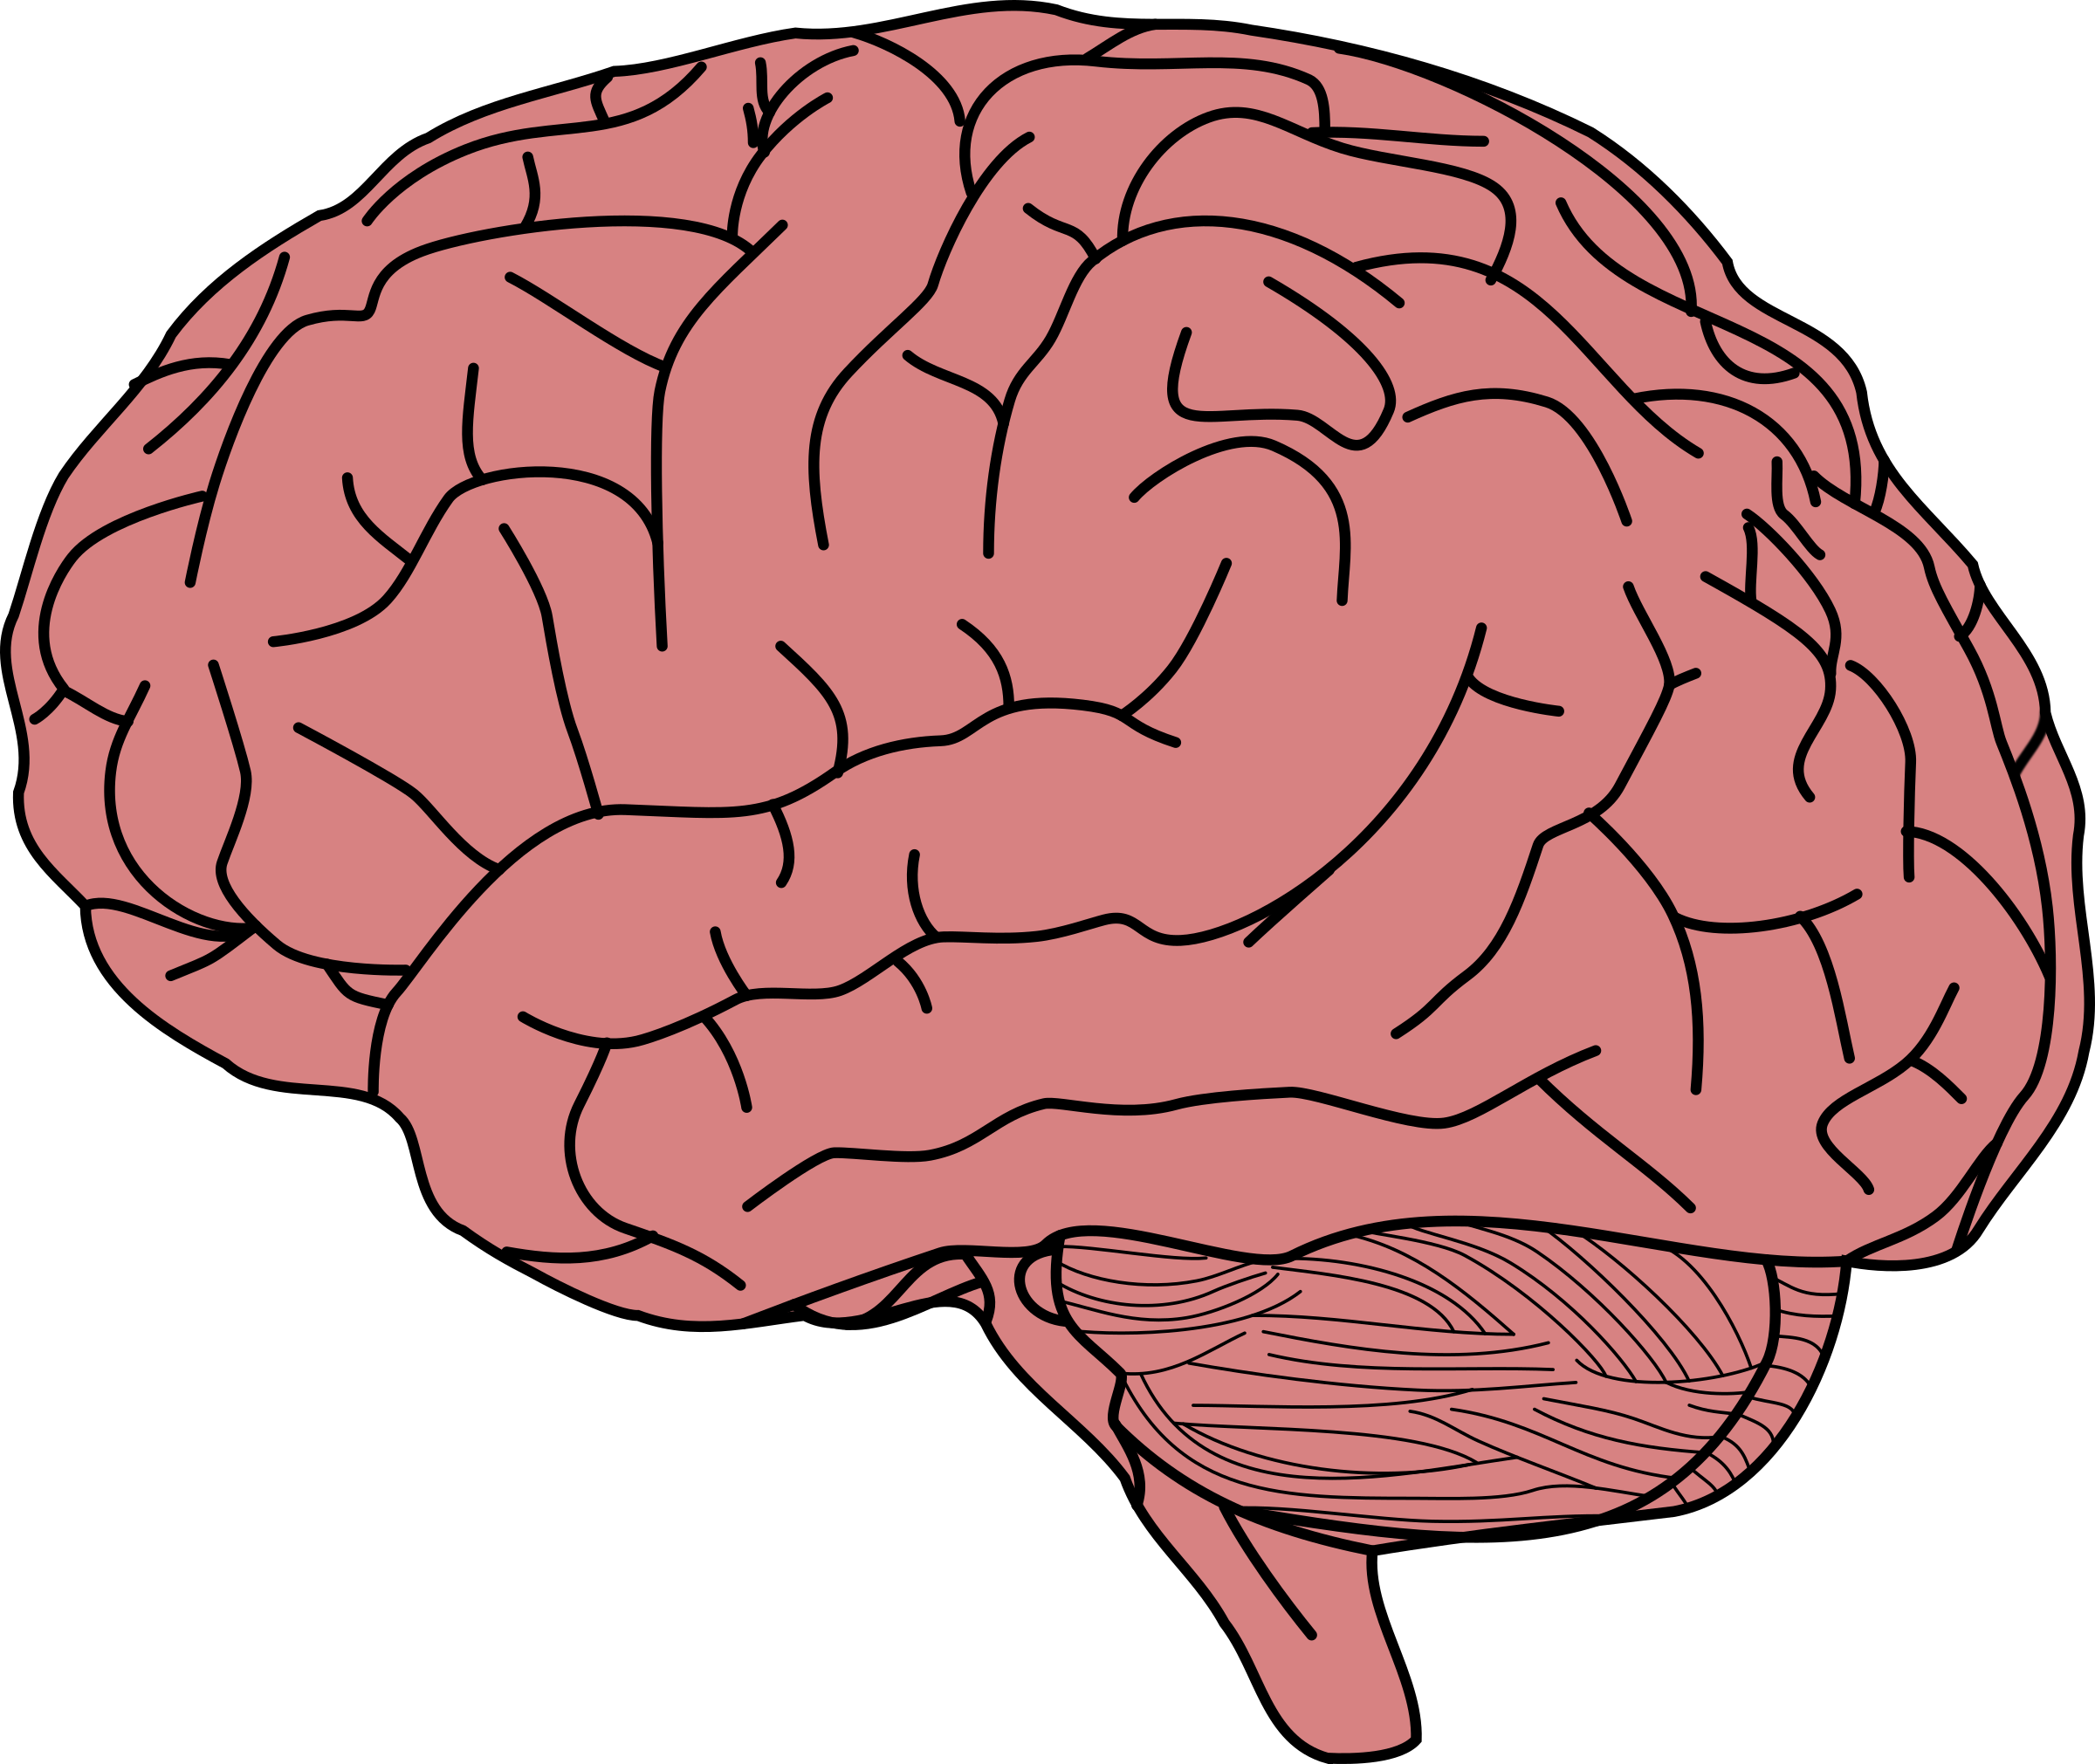 Human brain Memory Clip art - Brain png download - 2400*2021 - Free